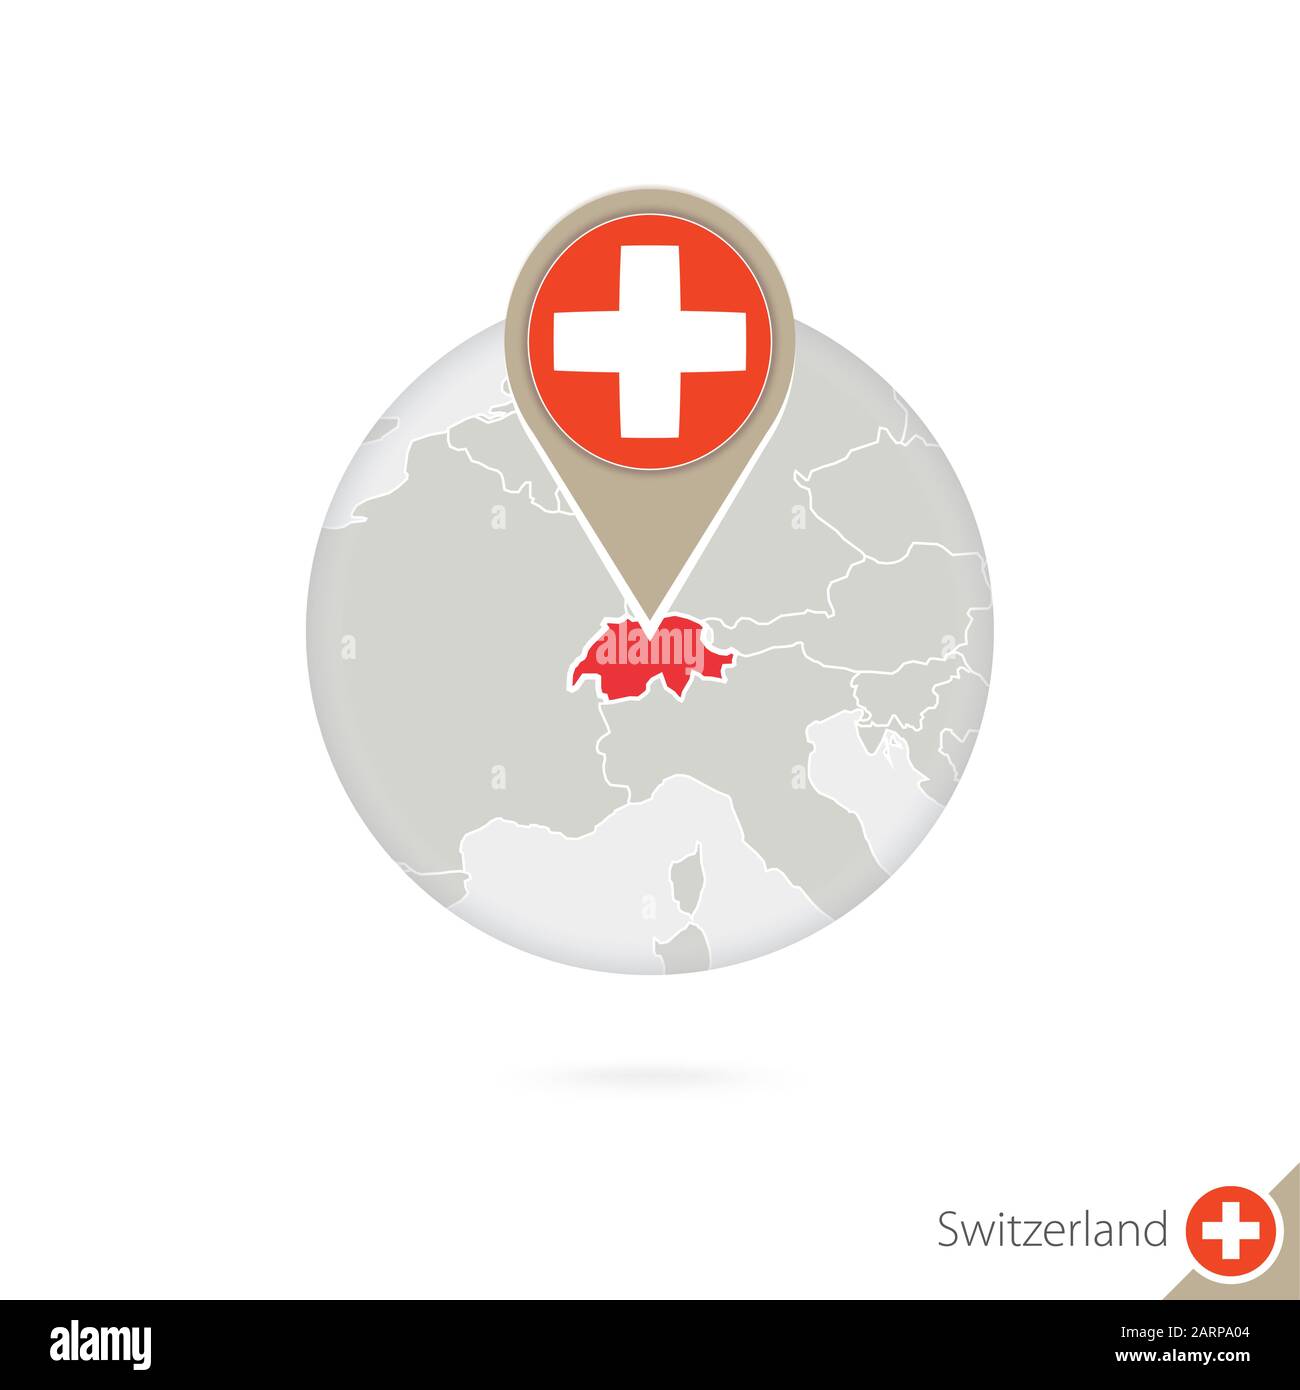 Karte und Flagge der Schweiz im Kreis. Karte der Schweiz, Flaggenstift  Schweiz. Karte der Schweiz im Stil des Globus. Vektorgrafiken  Stock-Vektorgrafik - Alamy